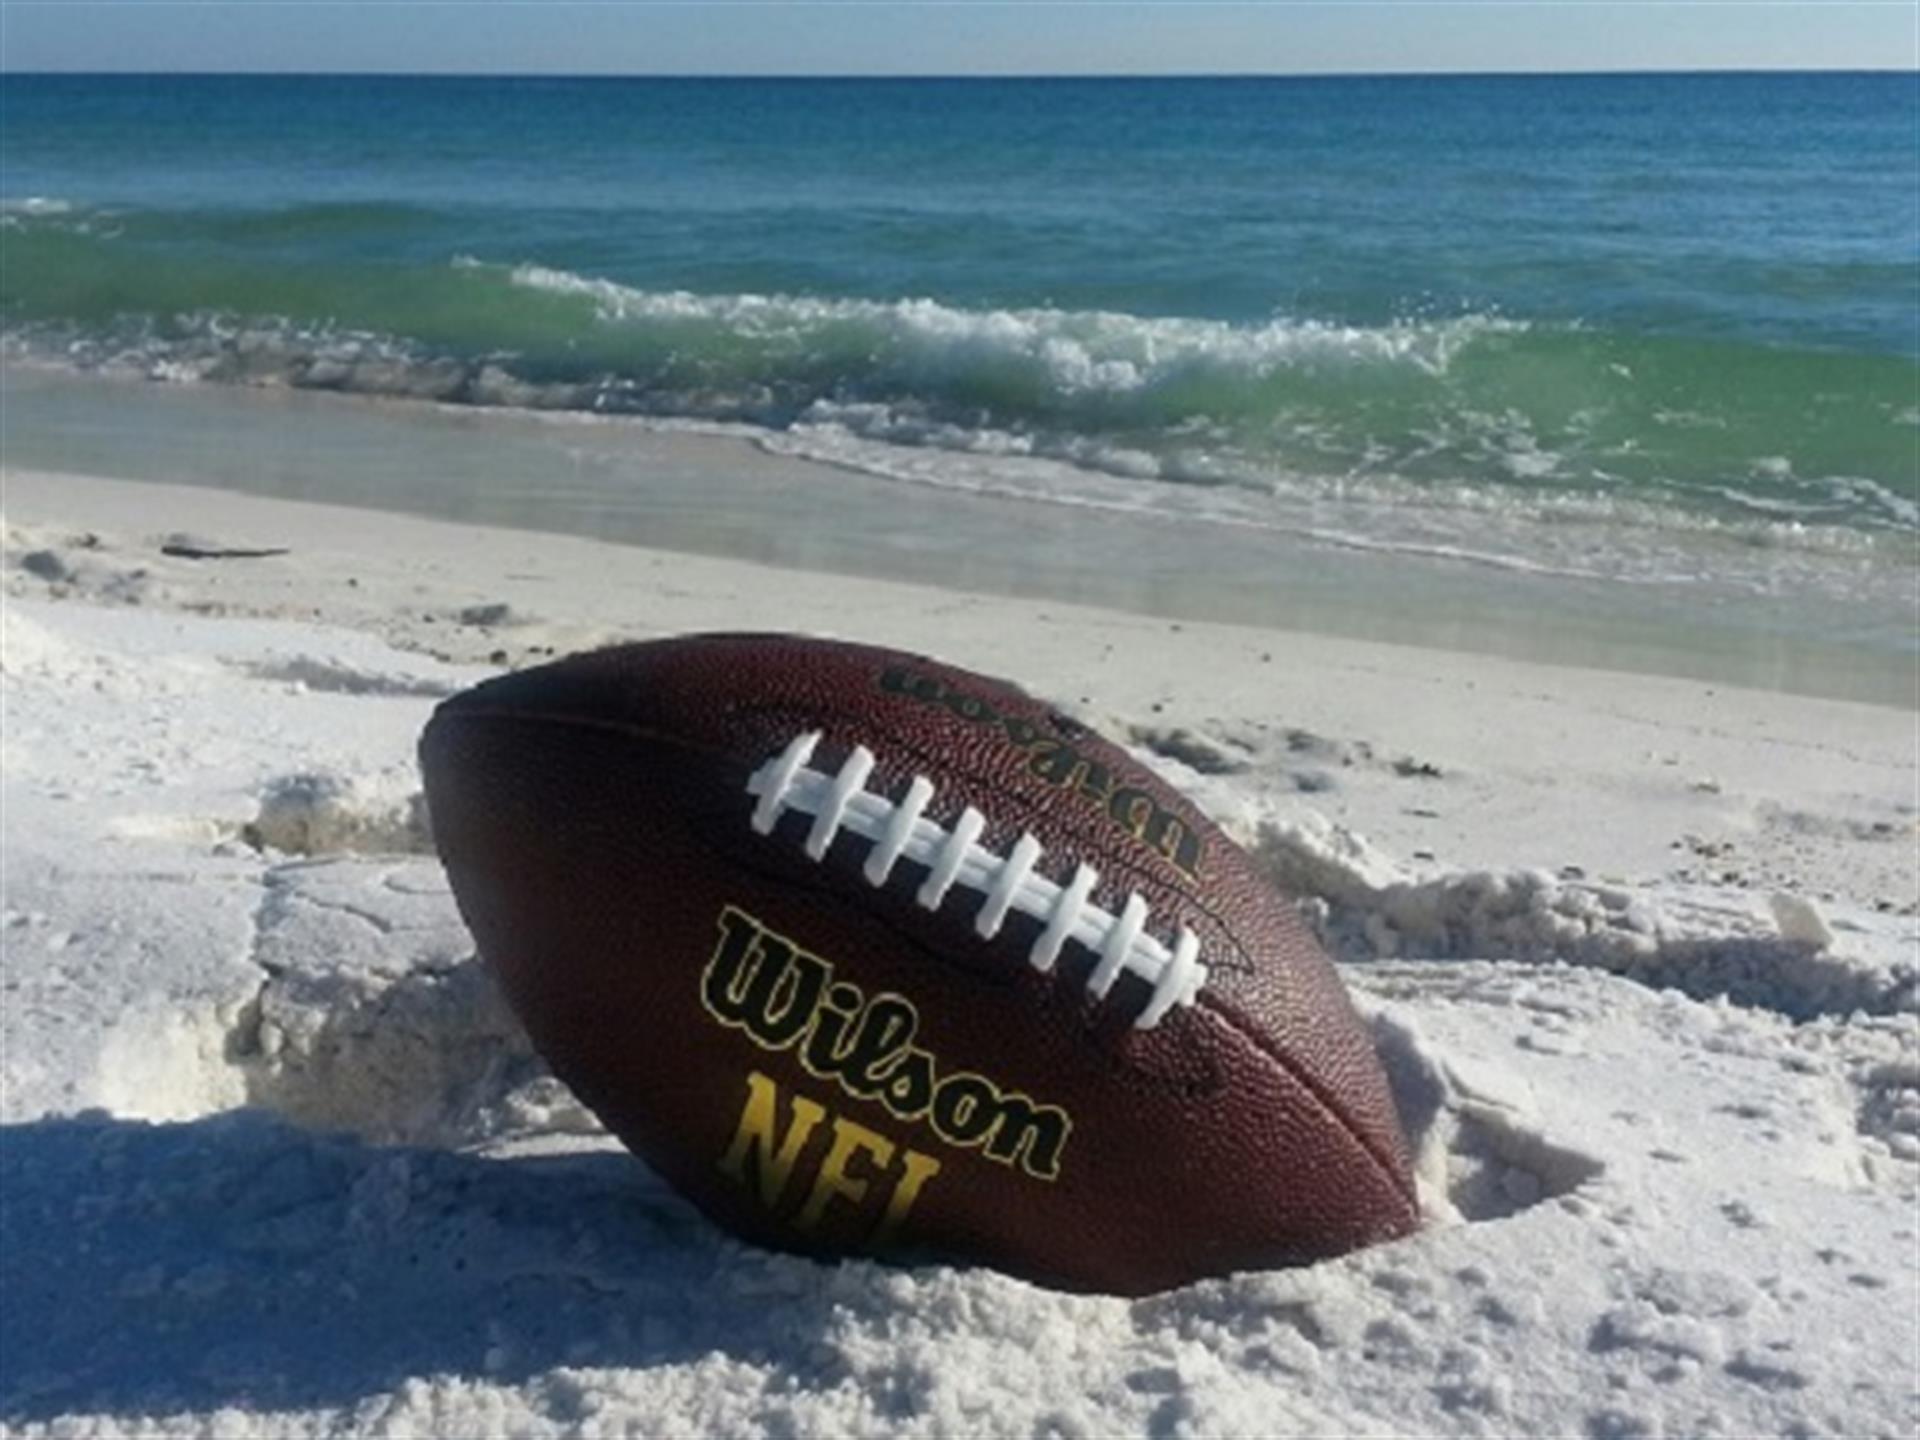 Football on the beaches of Destin, Florida